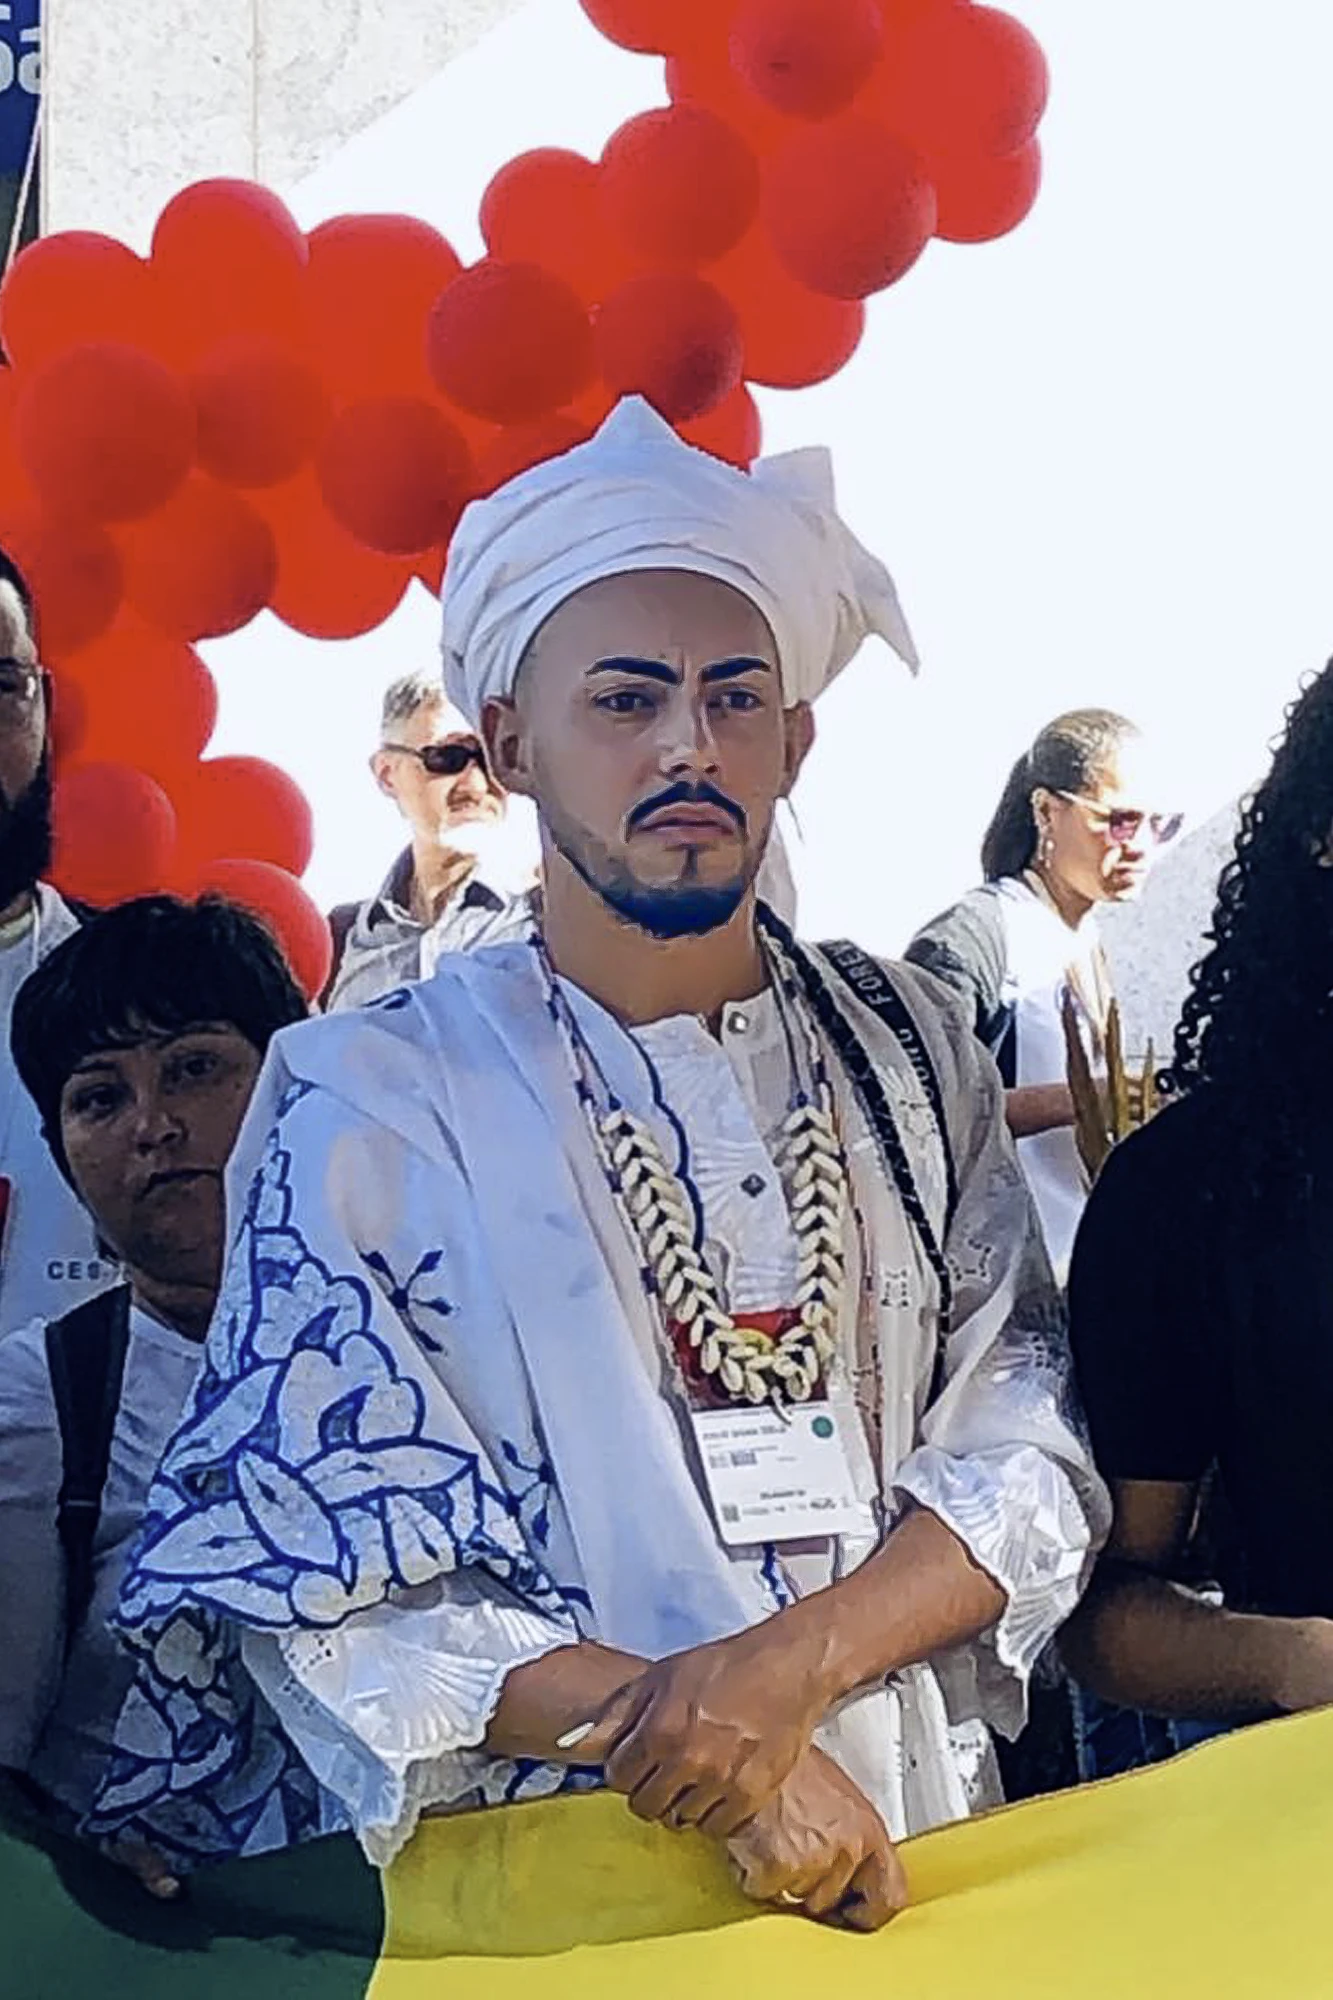 Pai Kauê de Oxalá, de Maracás (BA), pediu respeito à diversidade de gênero e o fim da intolerância. — Foto: Adriano De Lavor.